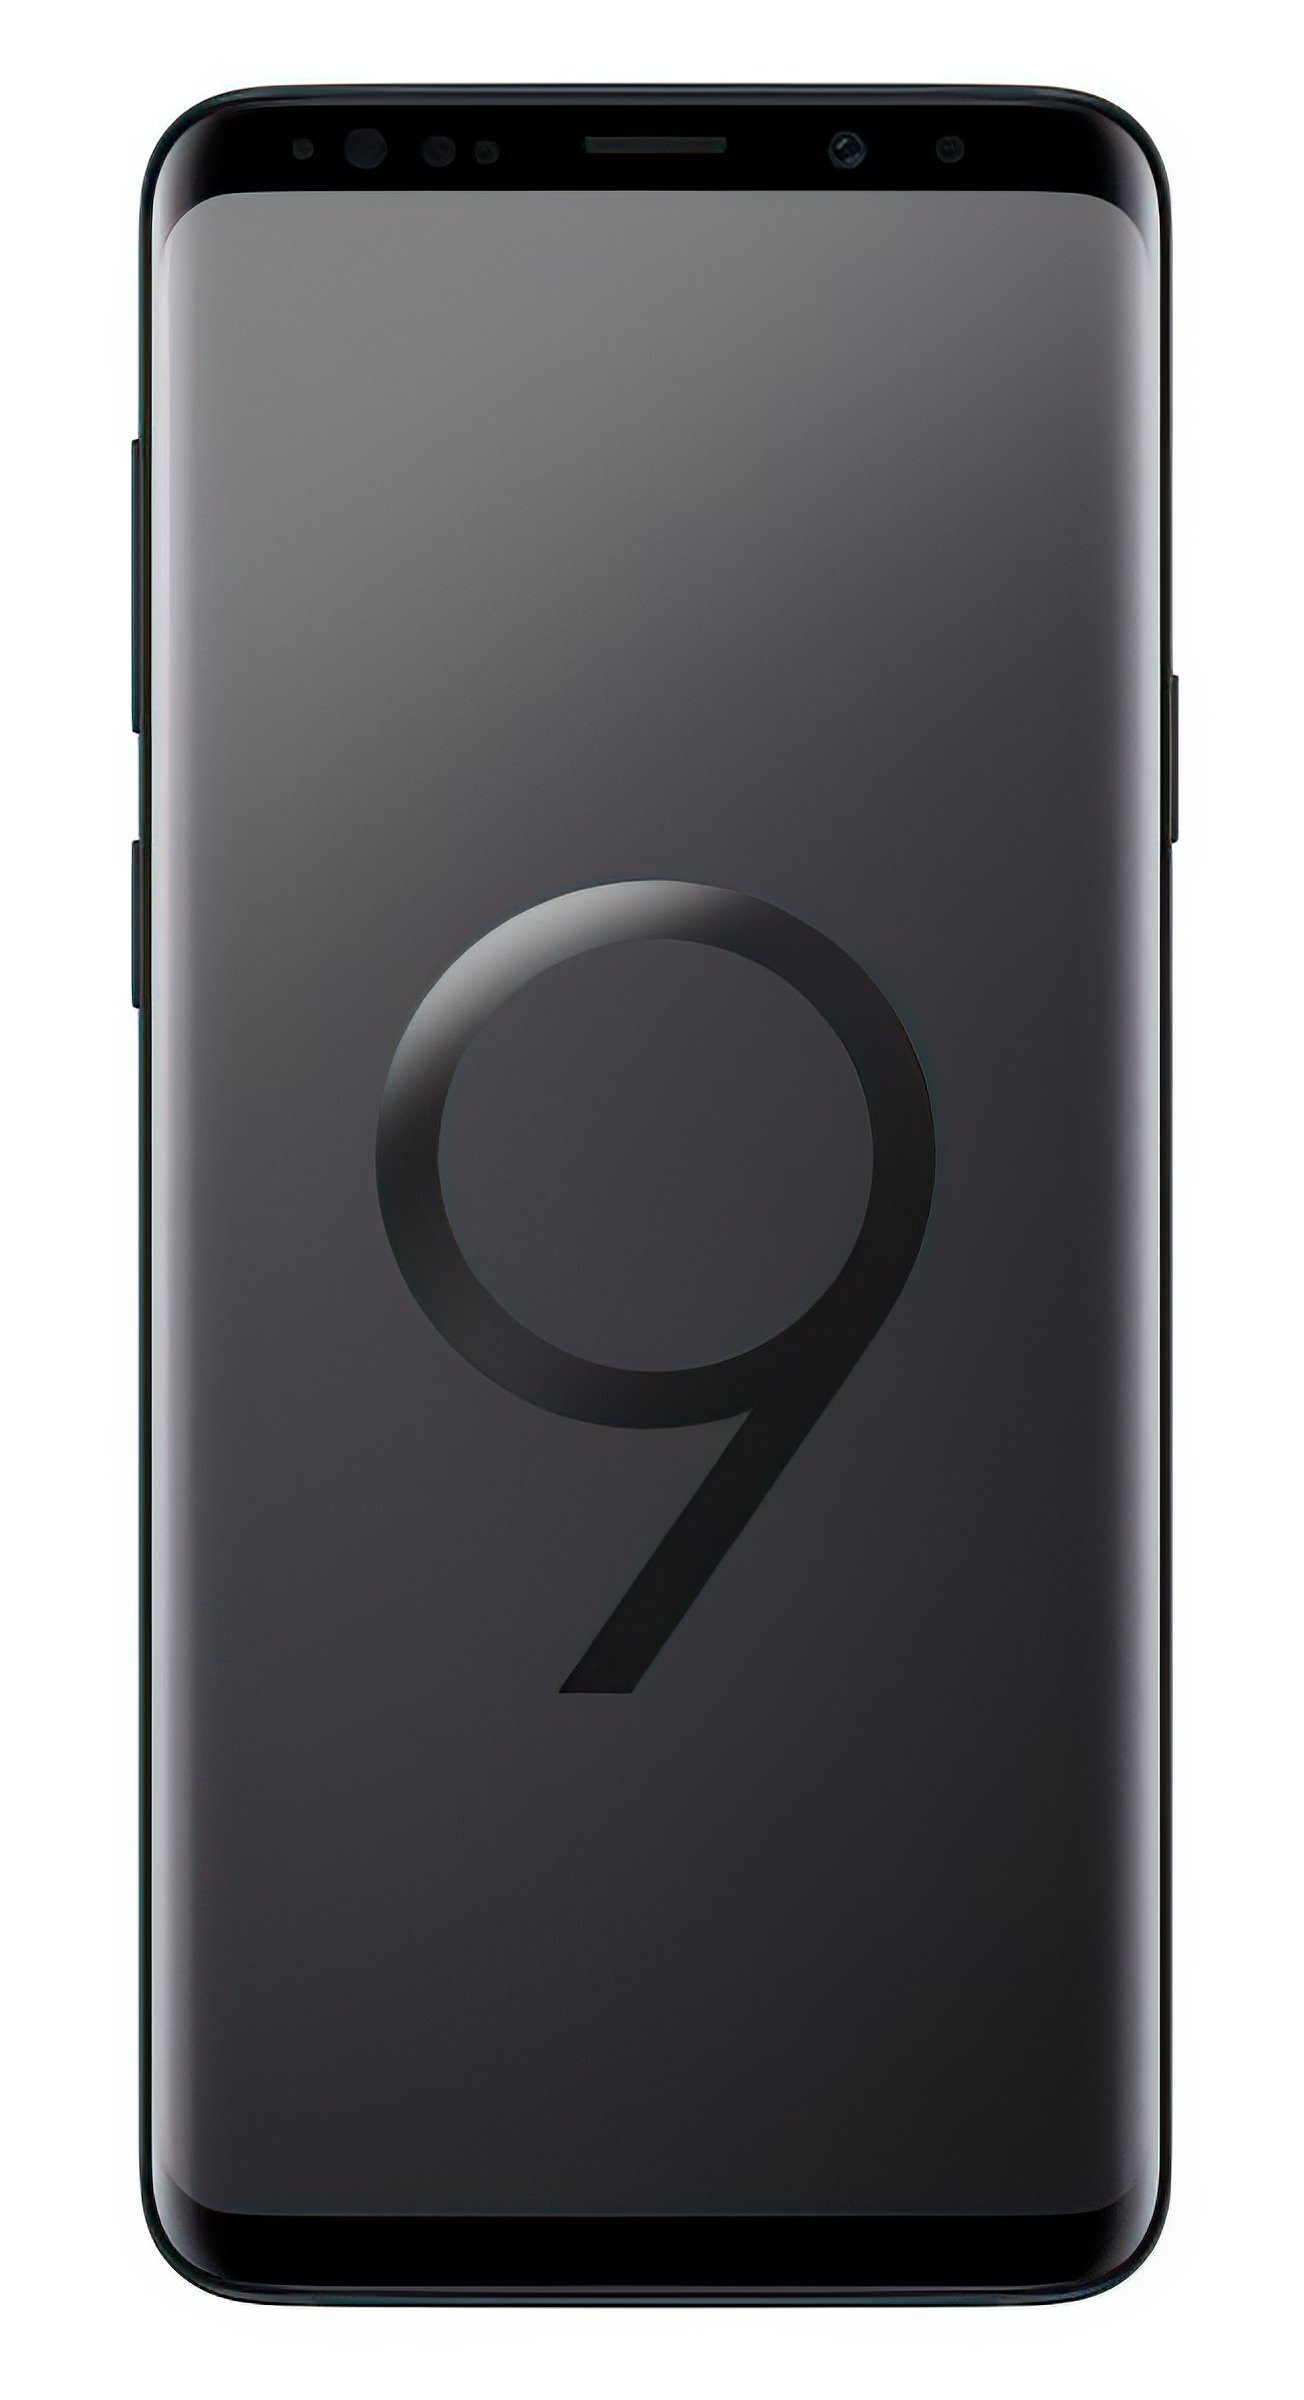  Смартфон Samsung Galaxy S9 + G965F 64Gb Black фото1